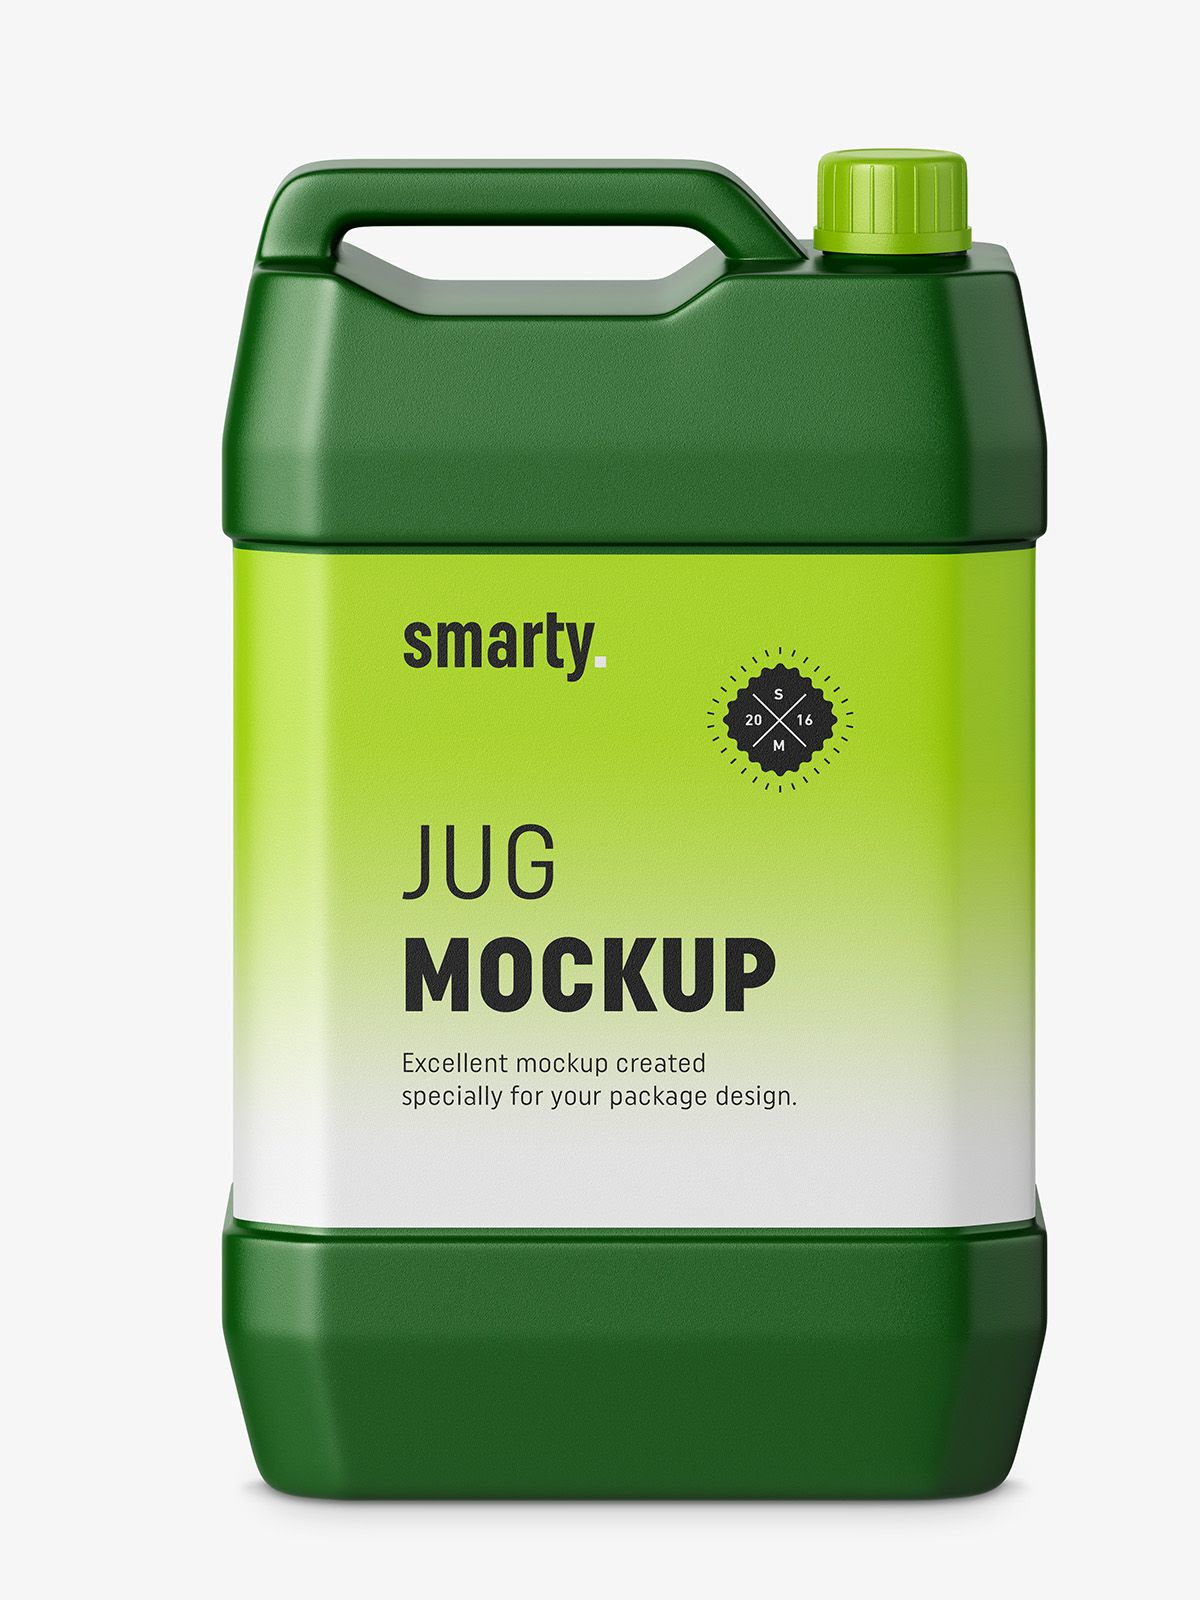 Plastic jug mockup Smarty Mockups Plastic jugs, Jugs, Plastic jars